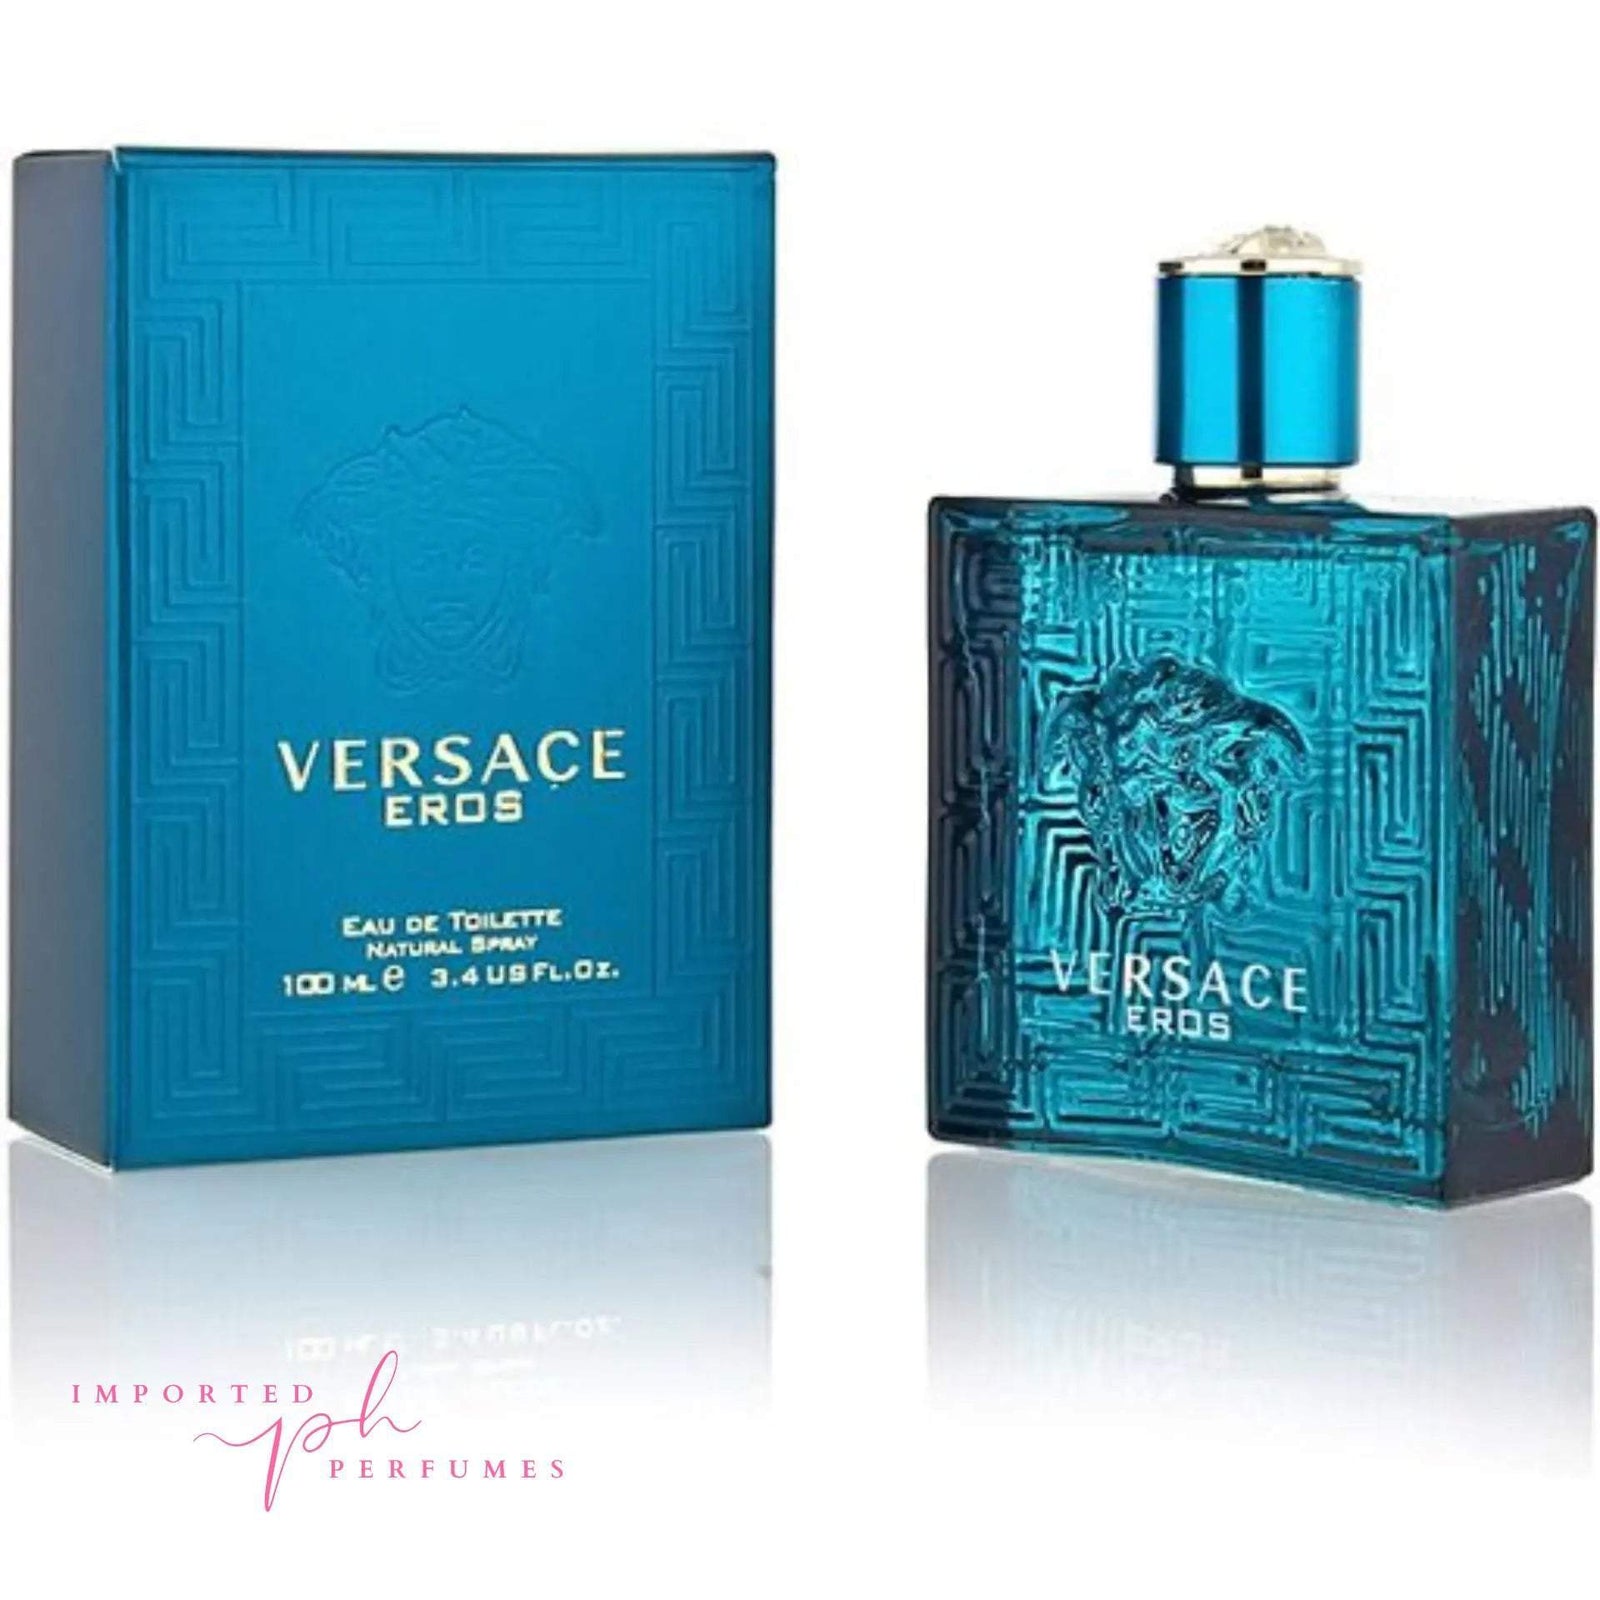 Versace Eros For Men 100ml Eau De Toilette-Imported Perfumes Co-eros,men,Versace